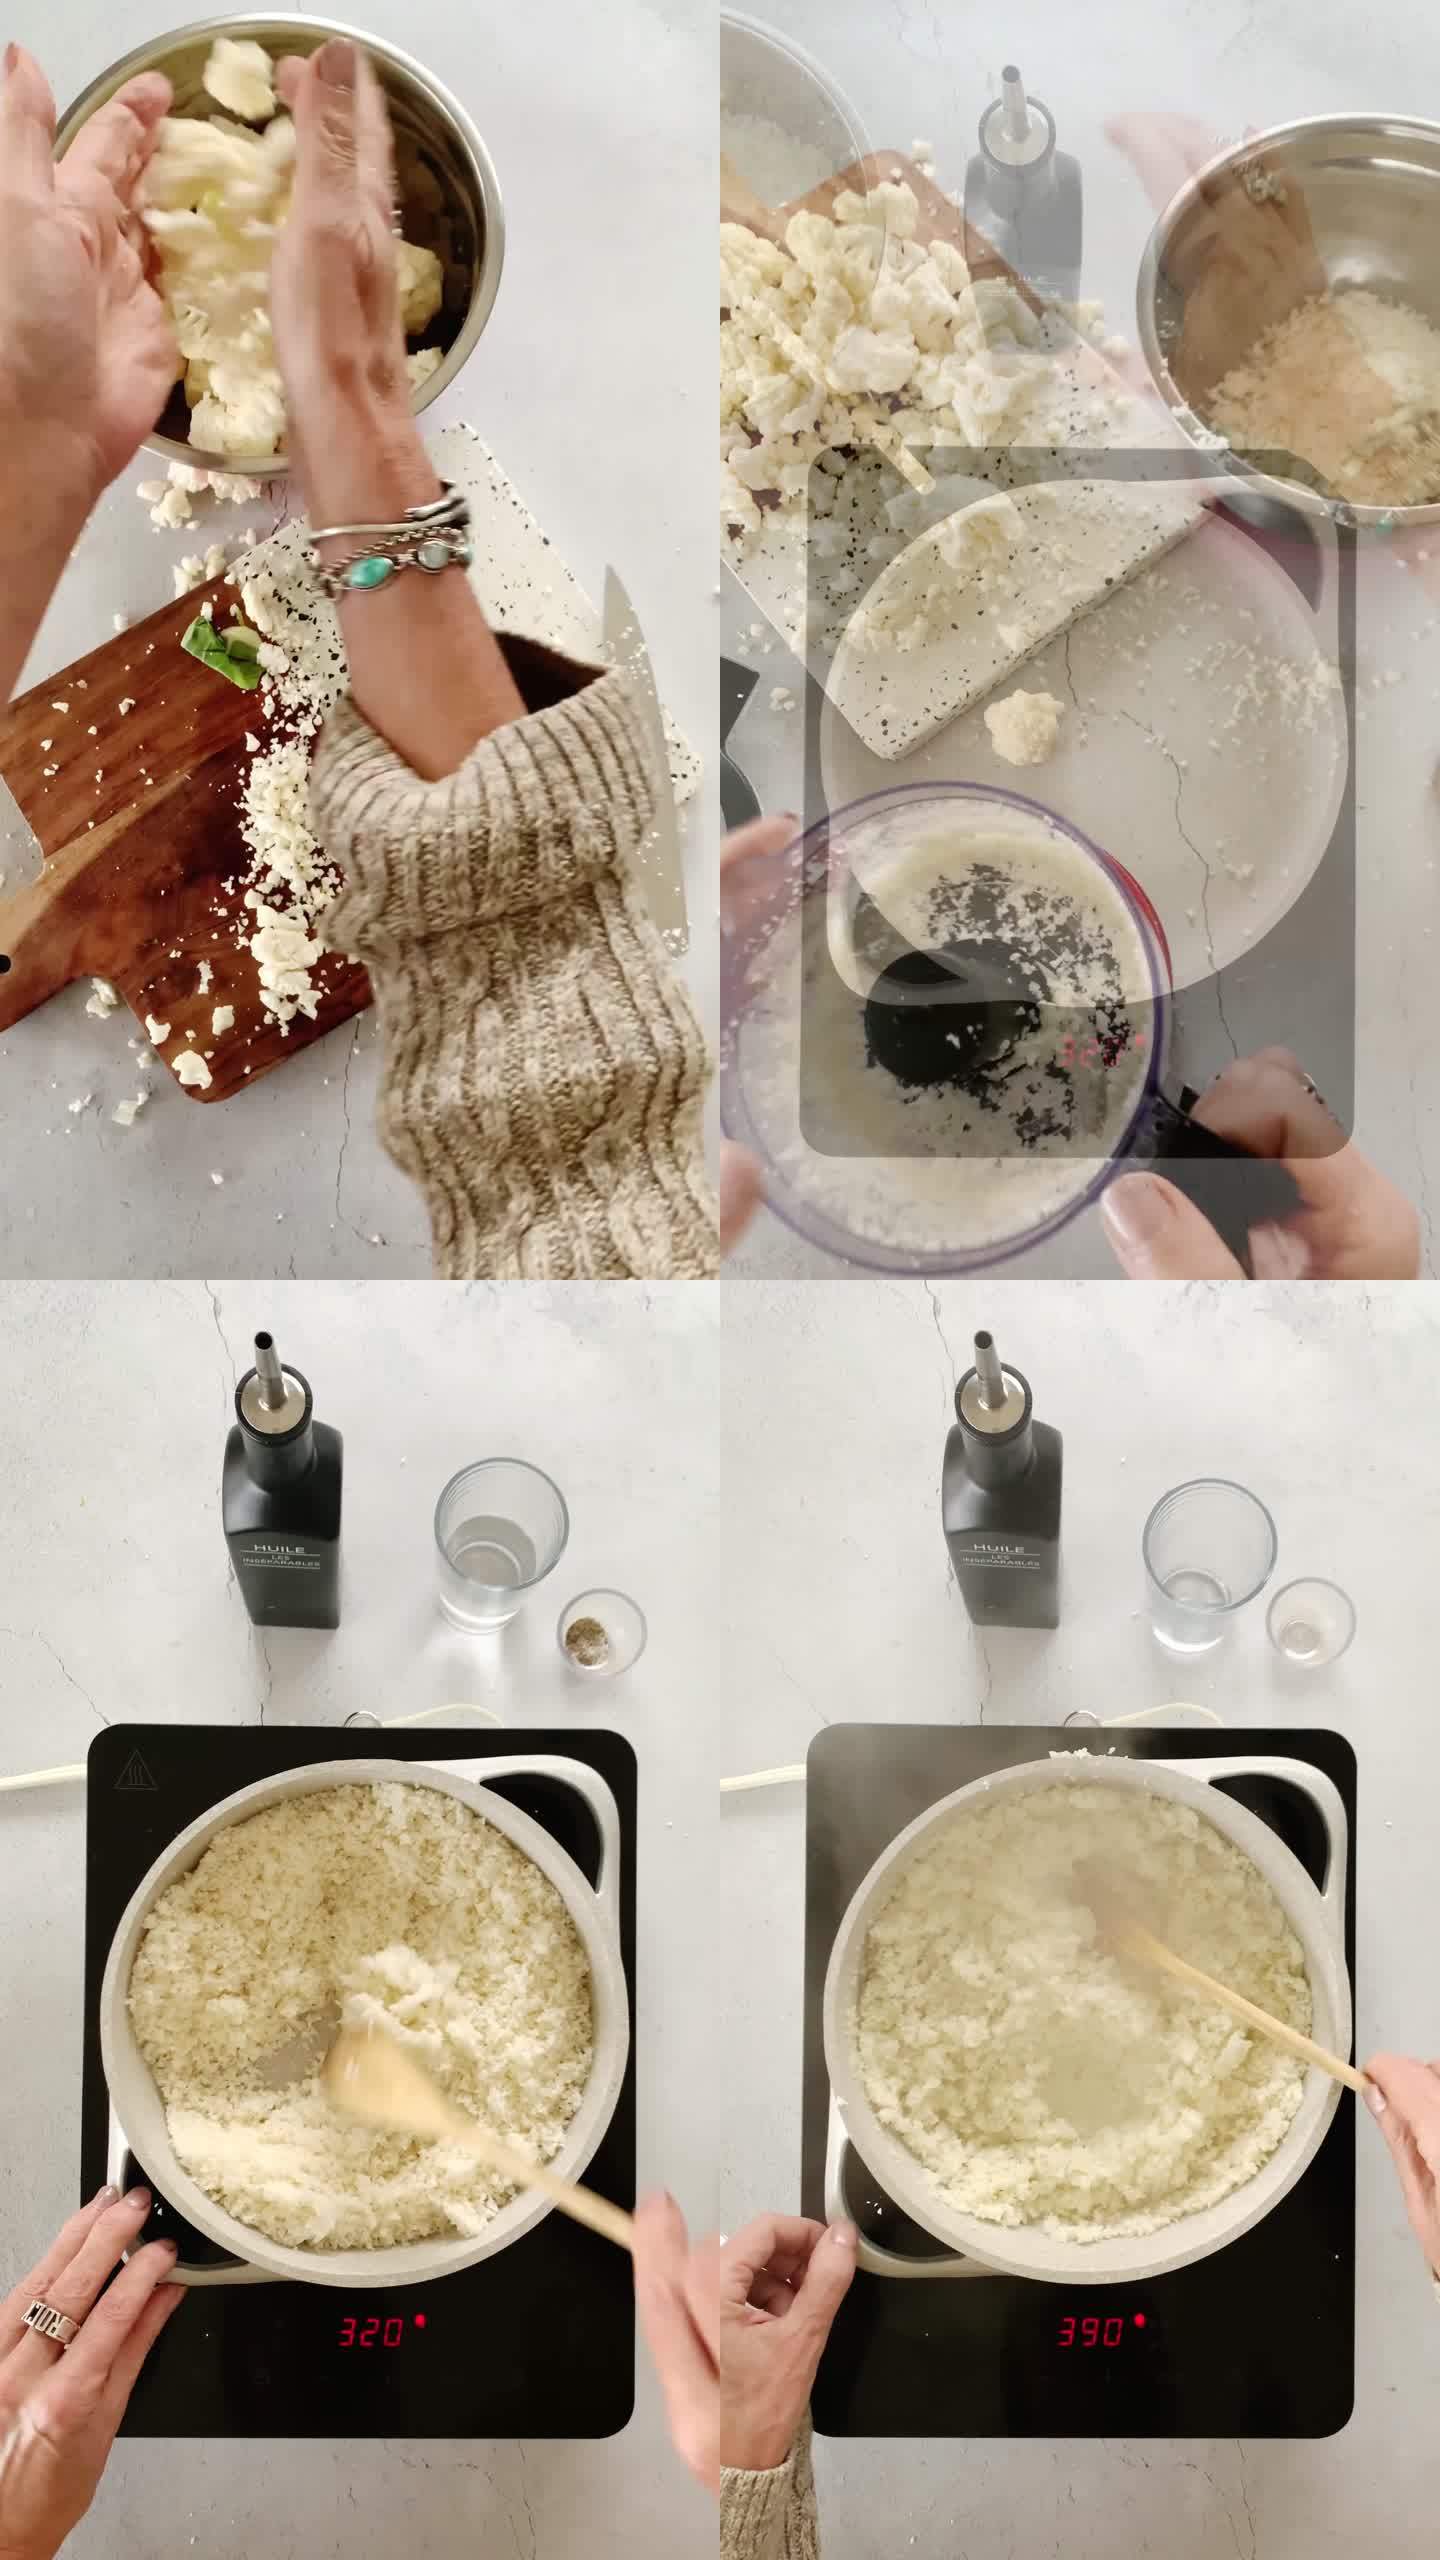 社交媒体亚洲汤的垂直食品制作博客蒙太奇